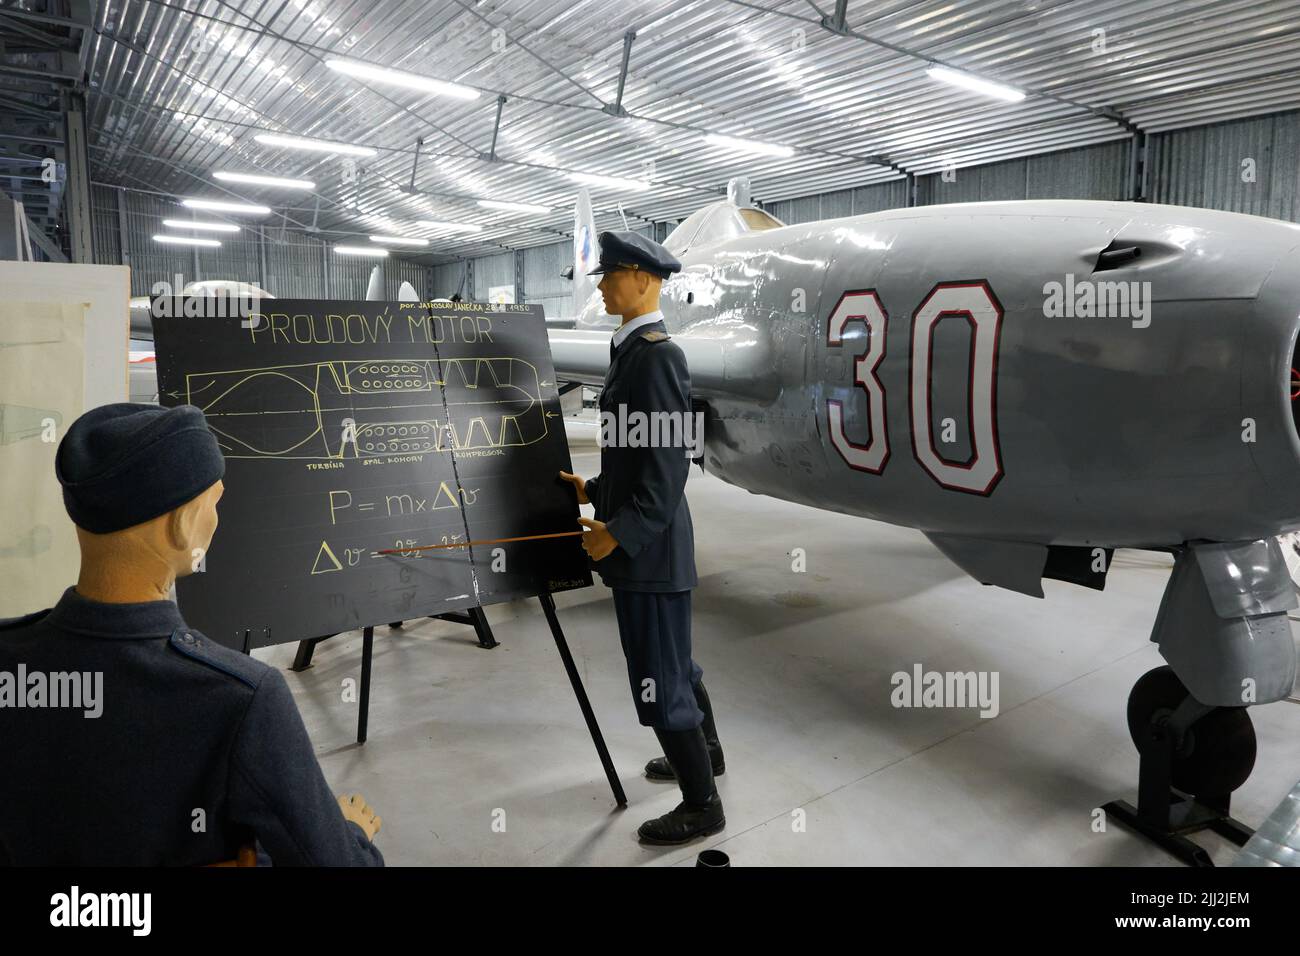 Prague, République tchèque - 17 juin 2022 - le musée de l'aviation Kbely - Hangar du général Karel Janousek - l'aviation de la Seconde Guerre mondiale Banque D'Images